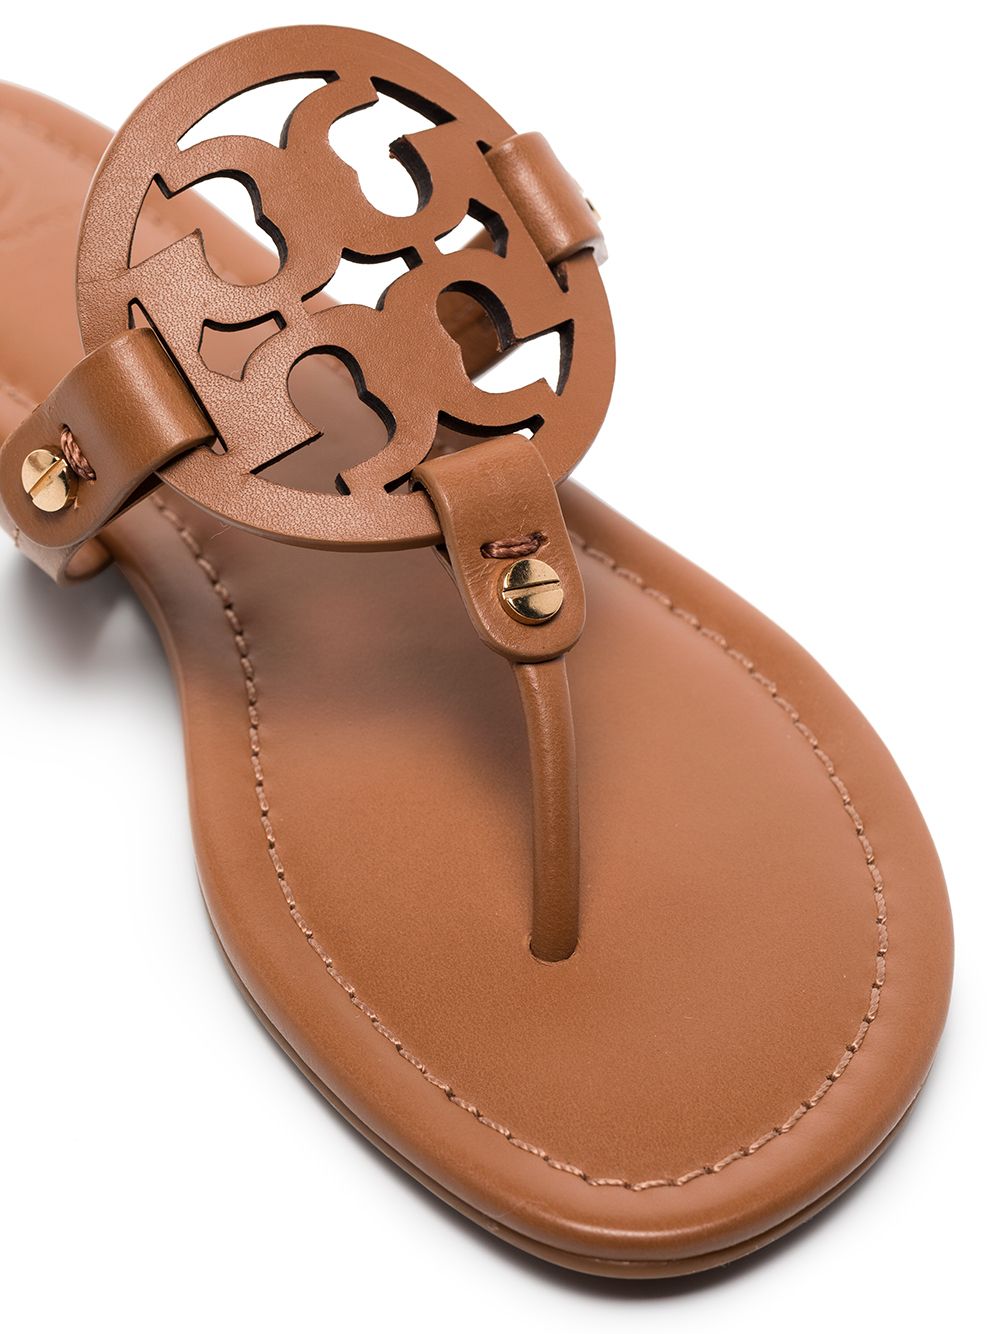 Miller leather sandals<BR/><BR/><BR/>